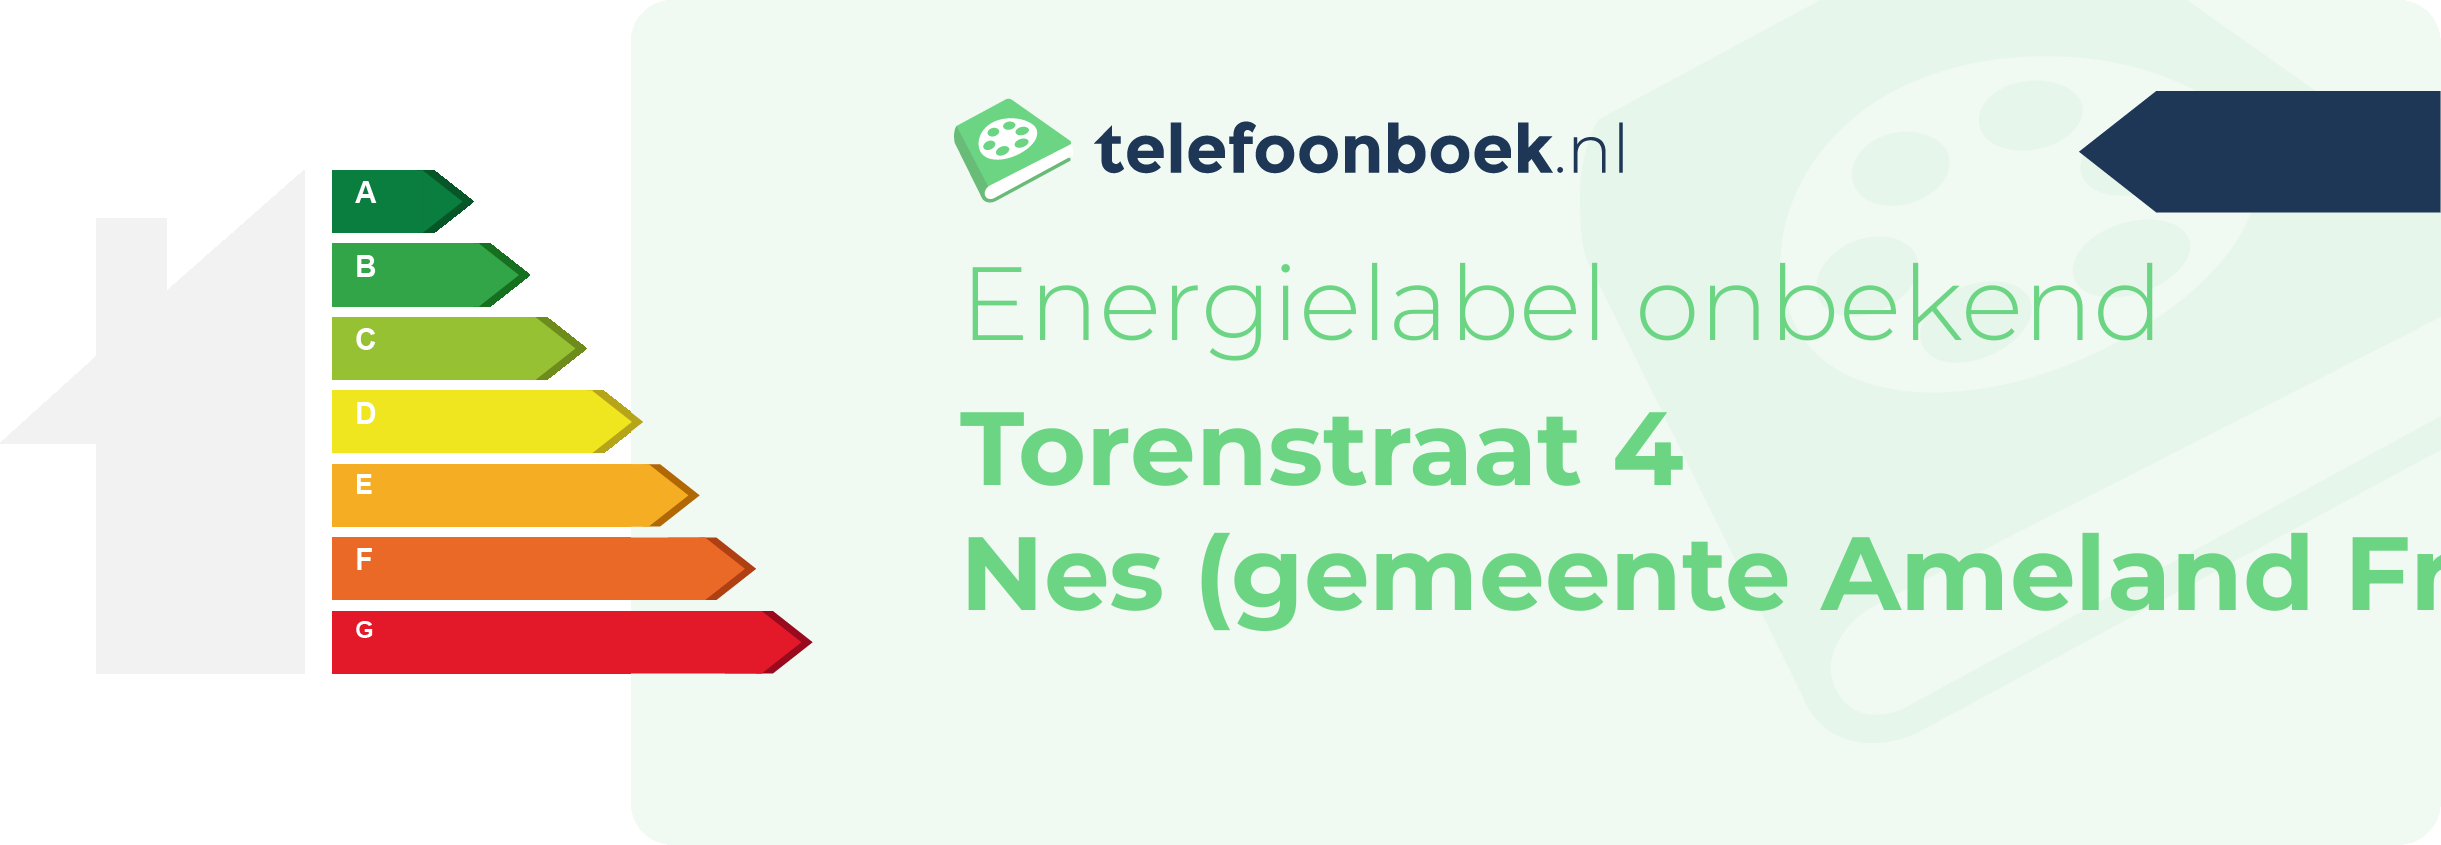 Energielabel Torenstraat 4 Nes (gemeente Ameland Friesland)